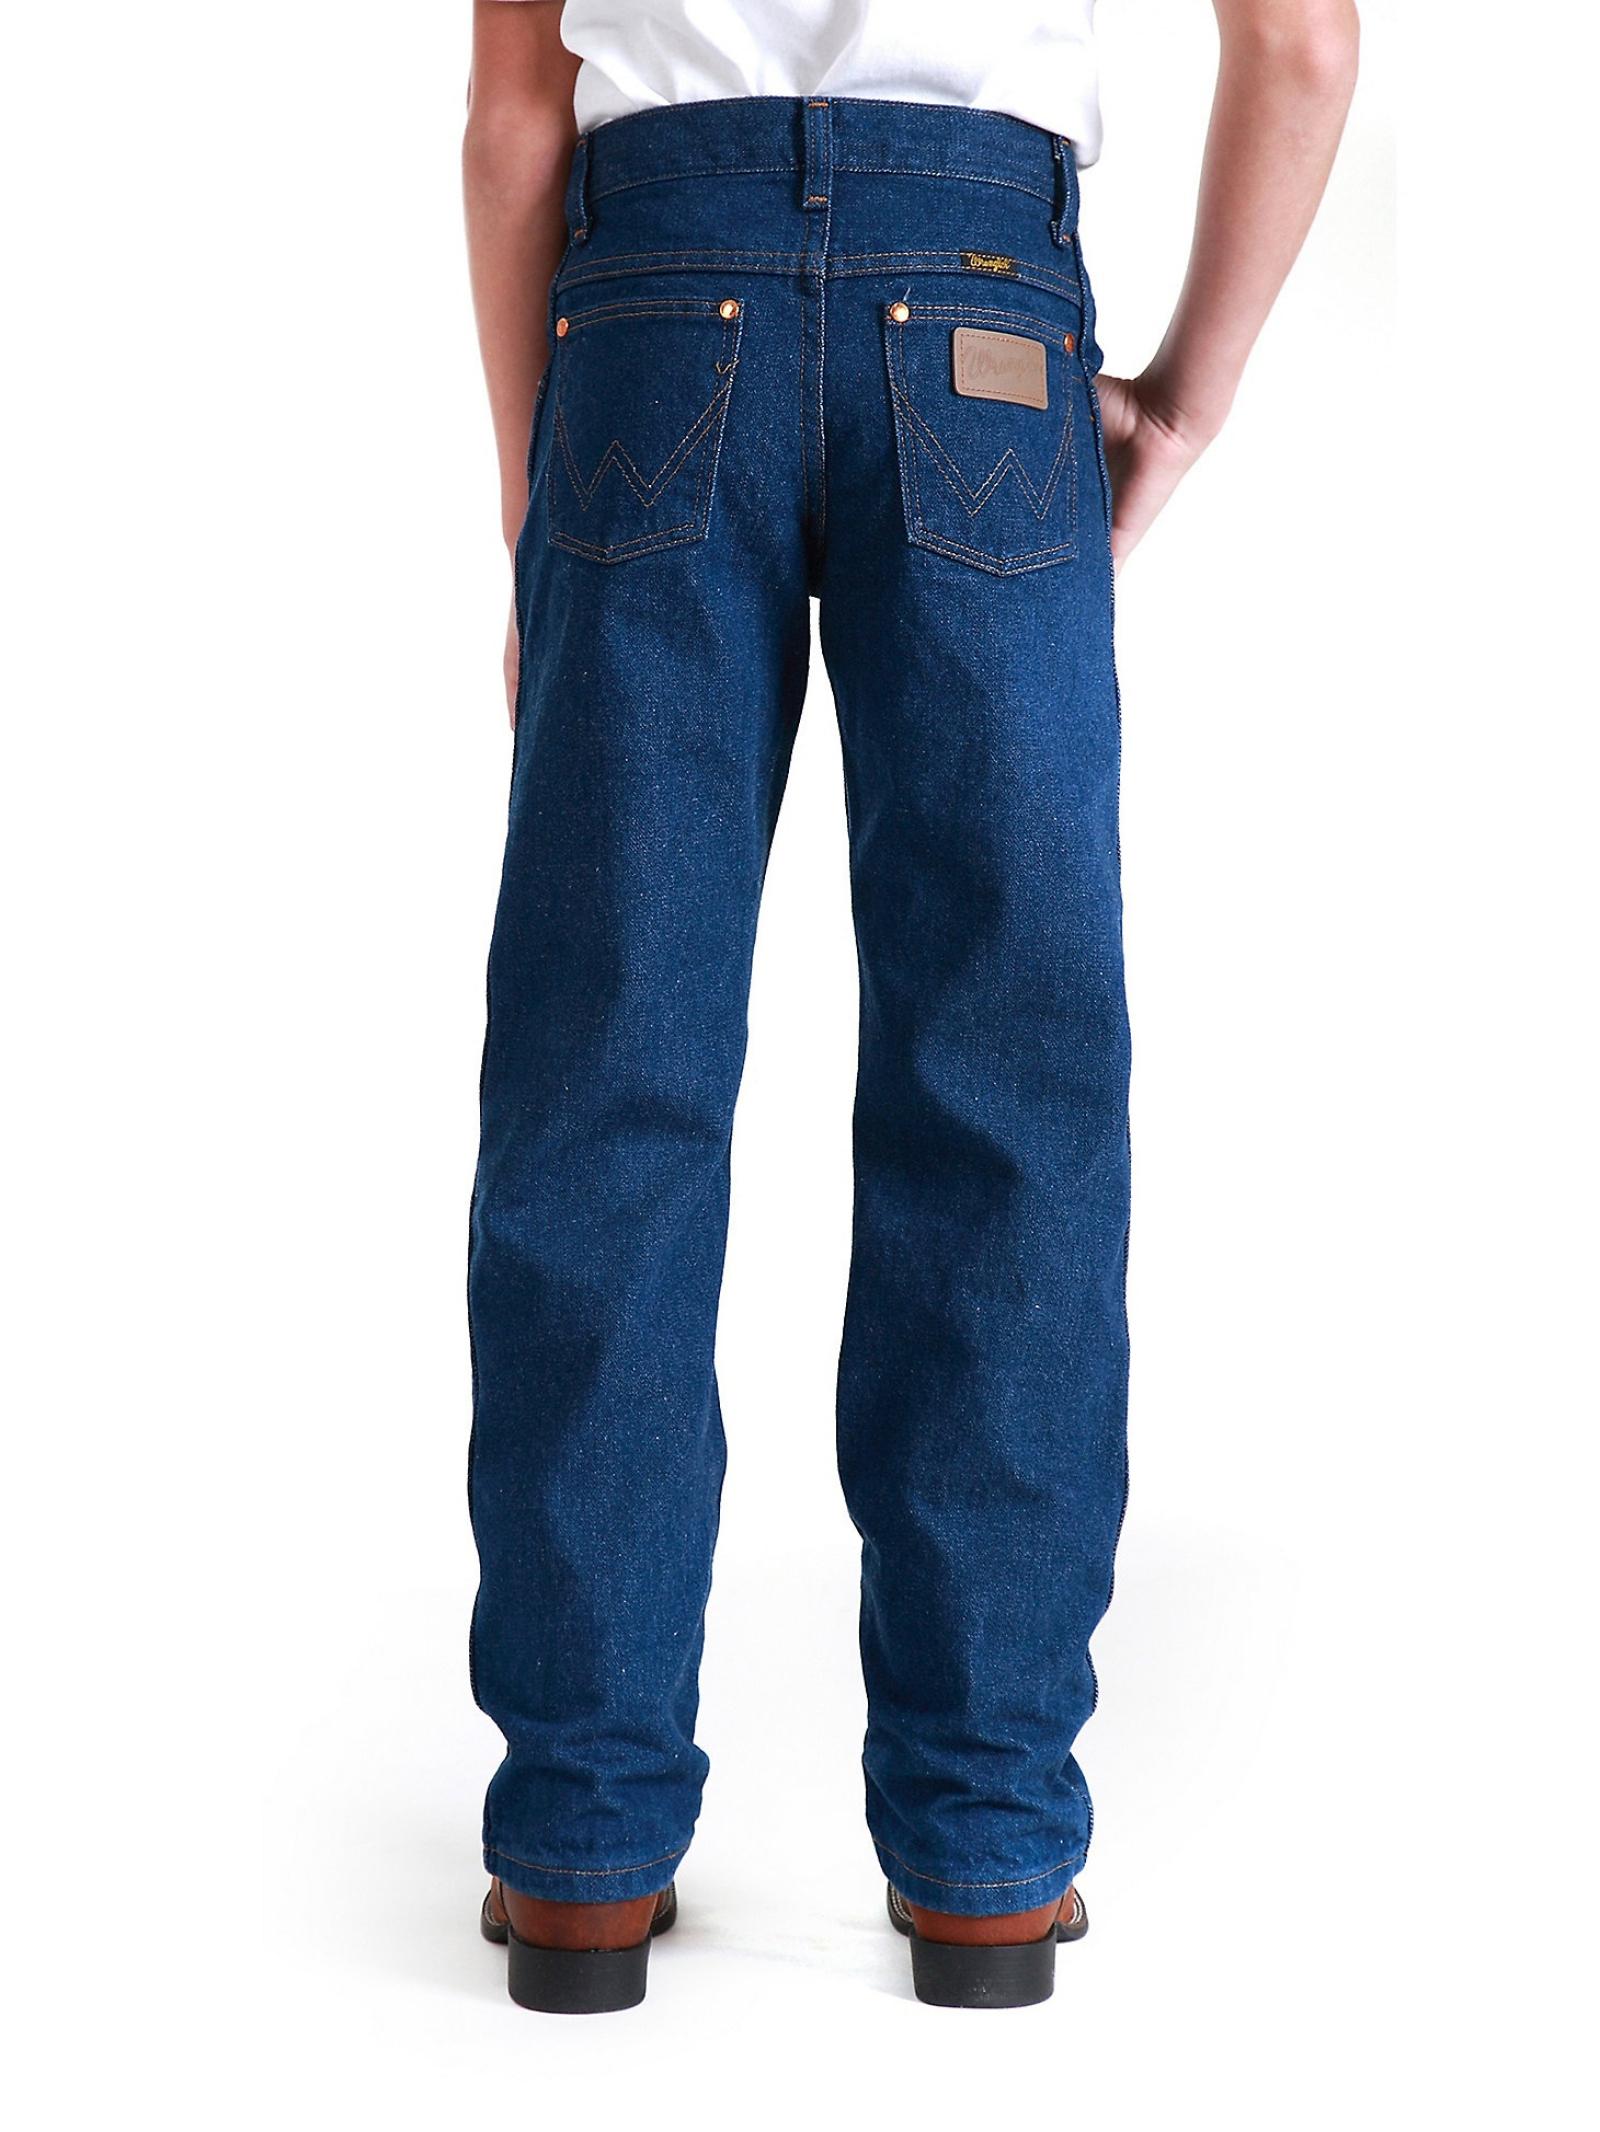 Wrangler Young Men's Cowboy Cut Original Fit Jean